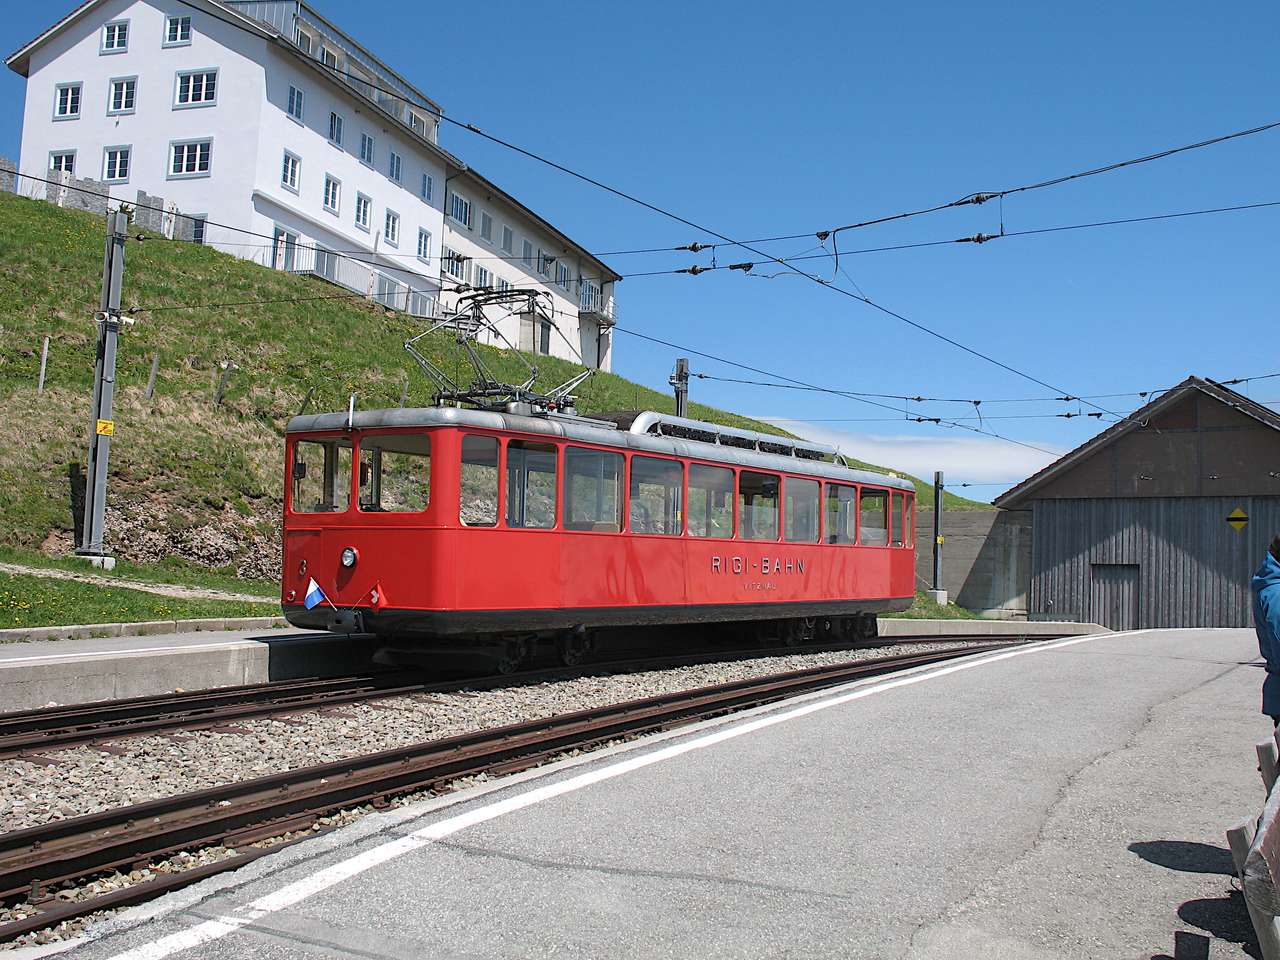 Calea ferată Rigi, Elveția jigsaw puzzle online